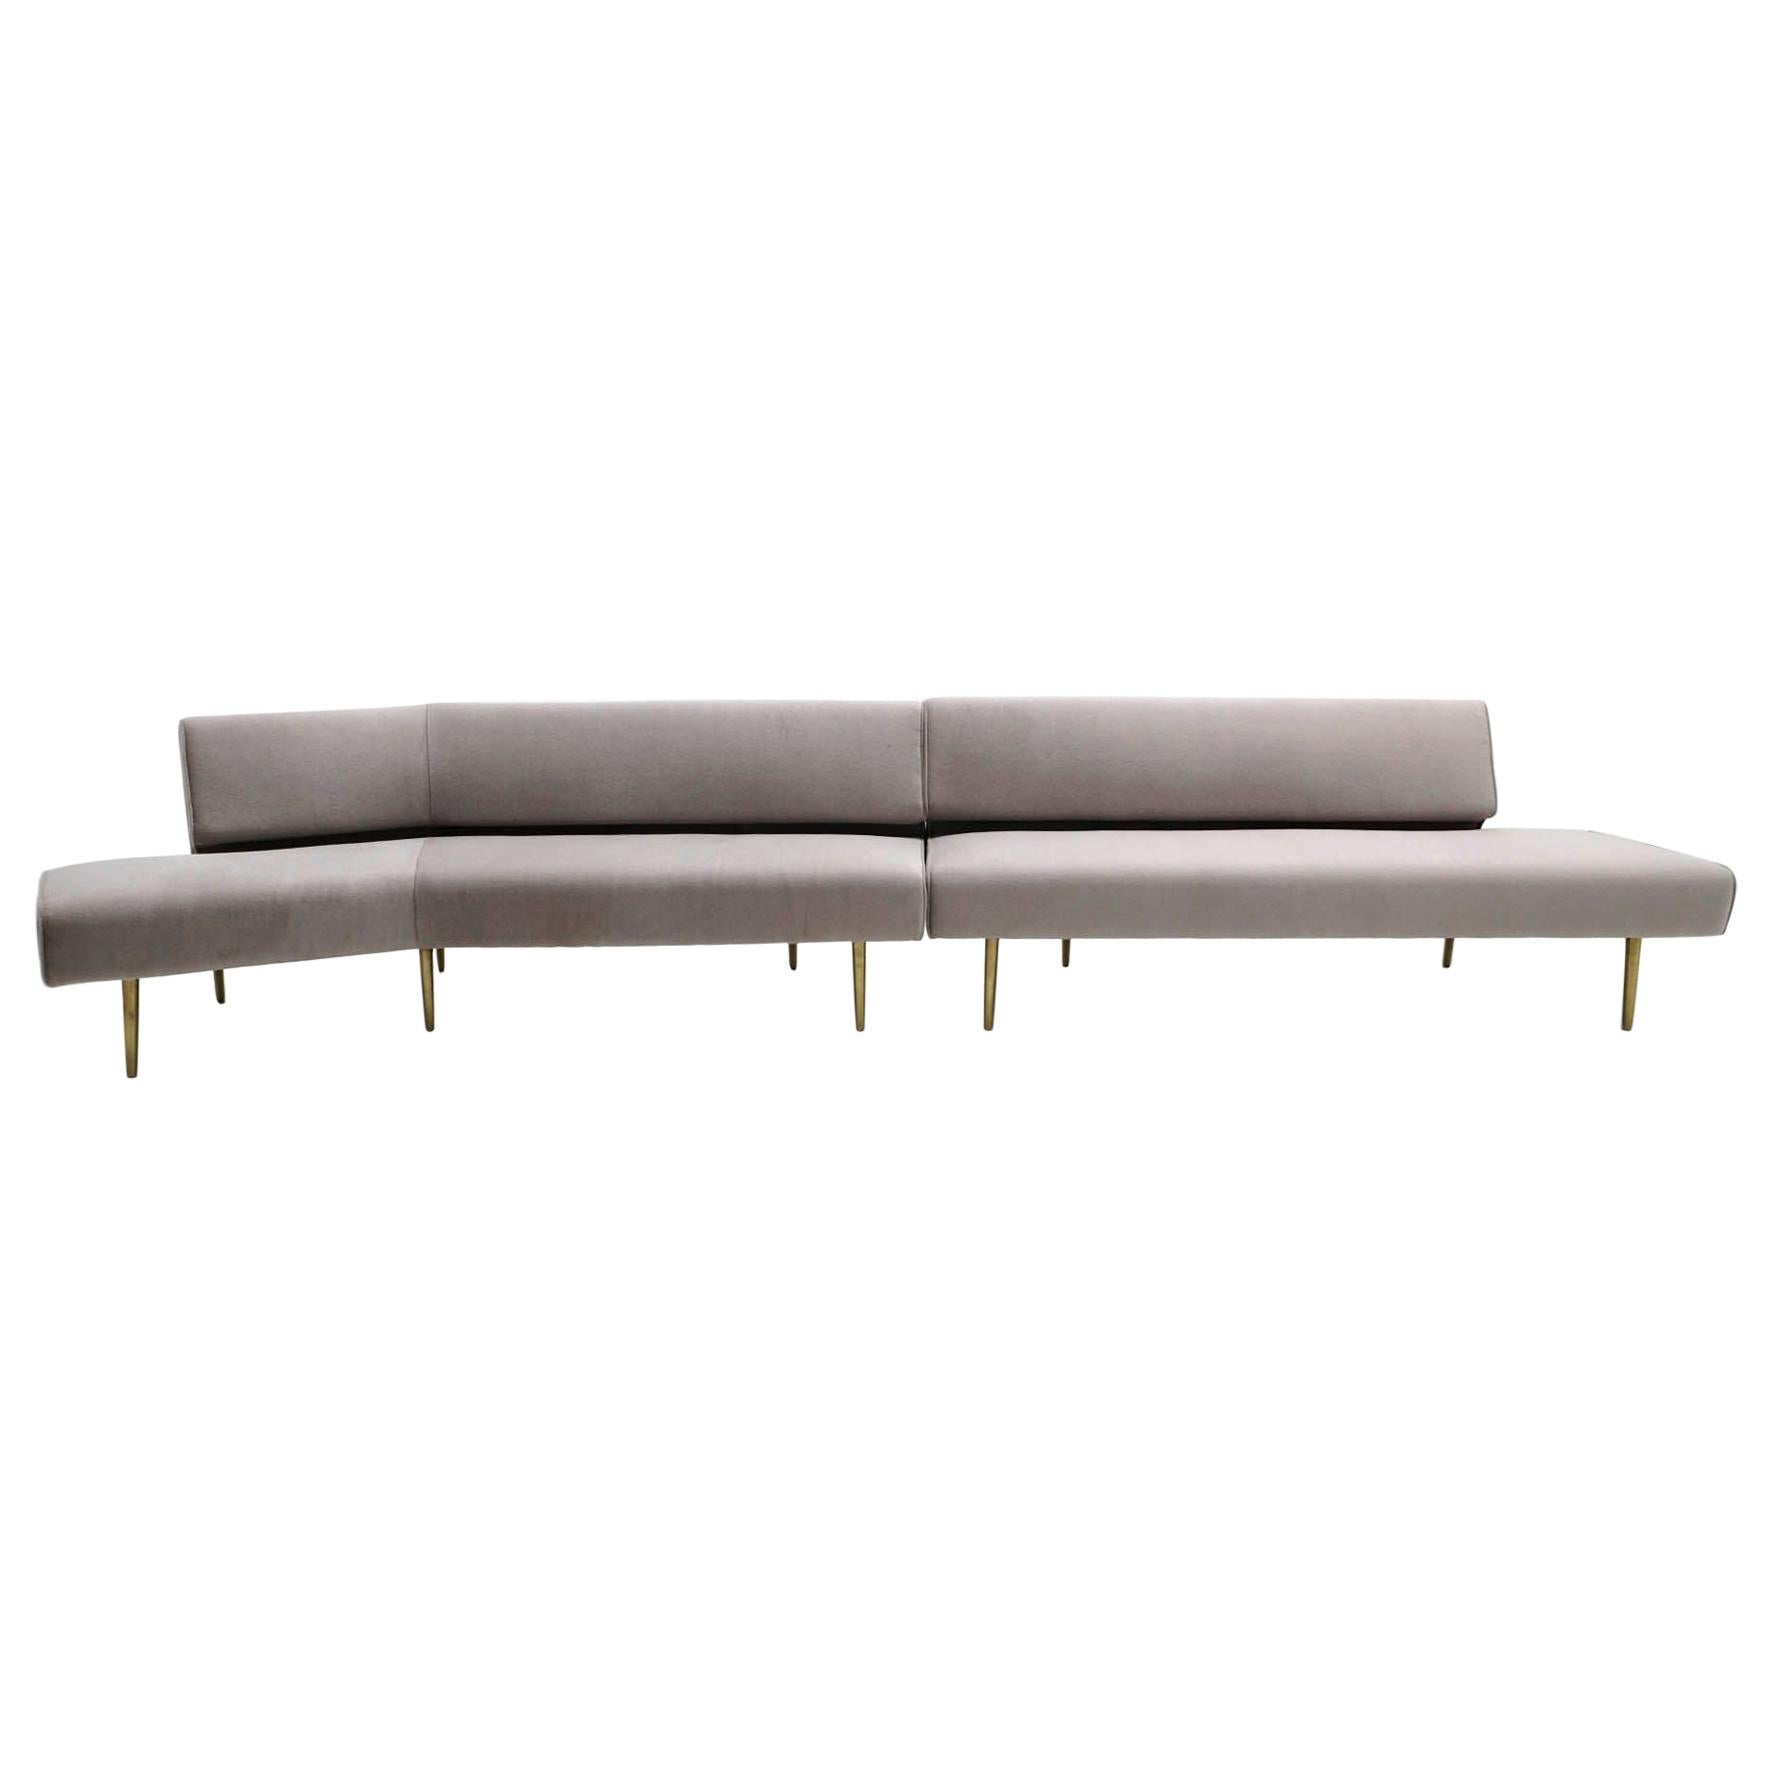 Zweiteiliges Dunbar-Sofa von Edward Wormley:: armlos:: Messingbeine:: Modelle 4756 & 4828